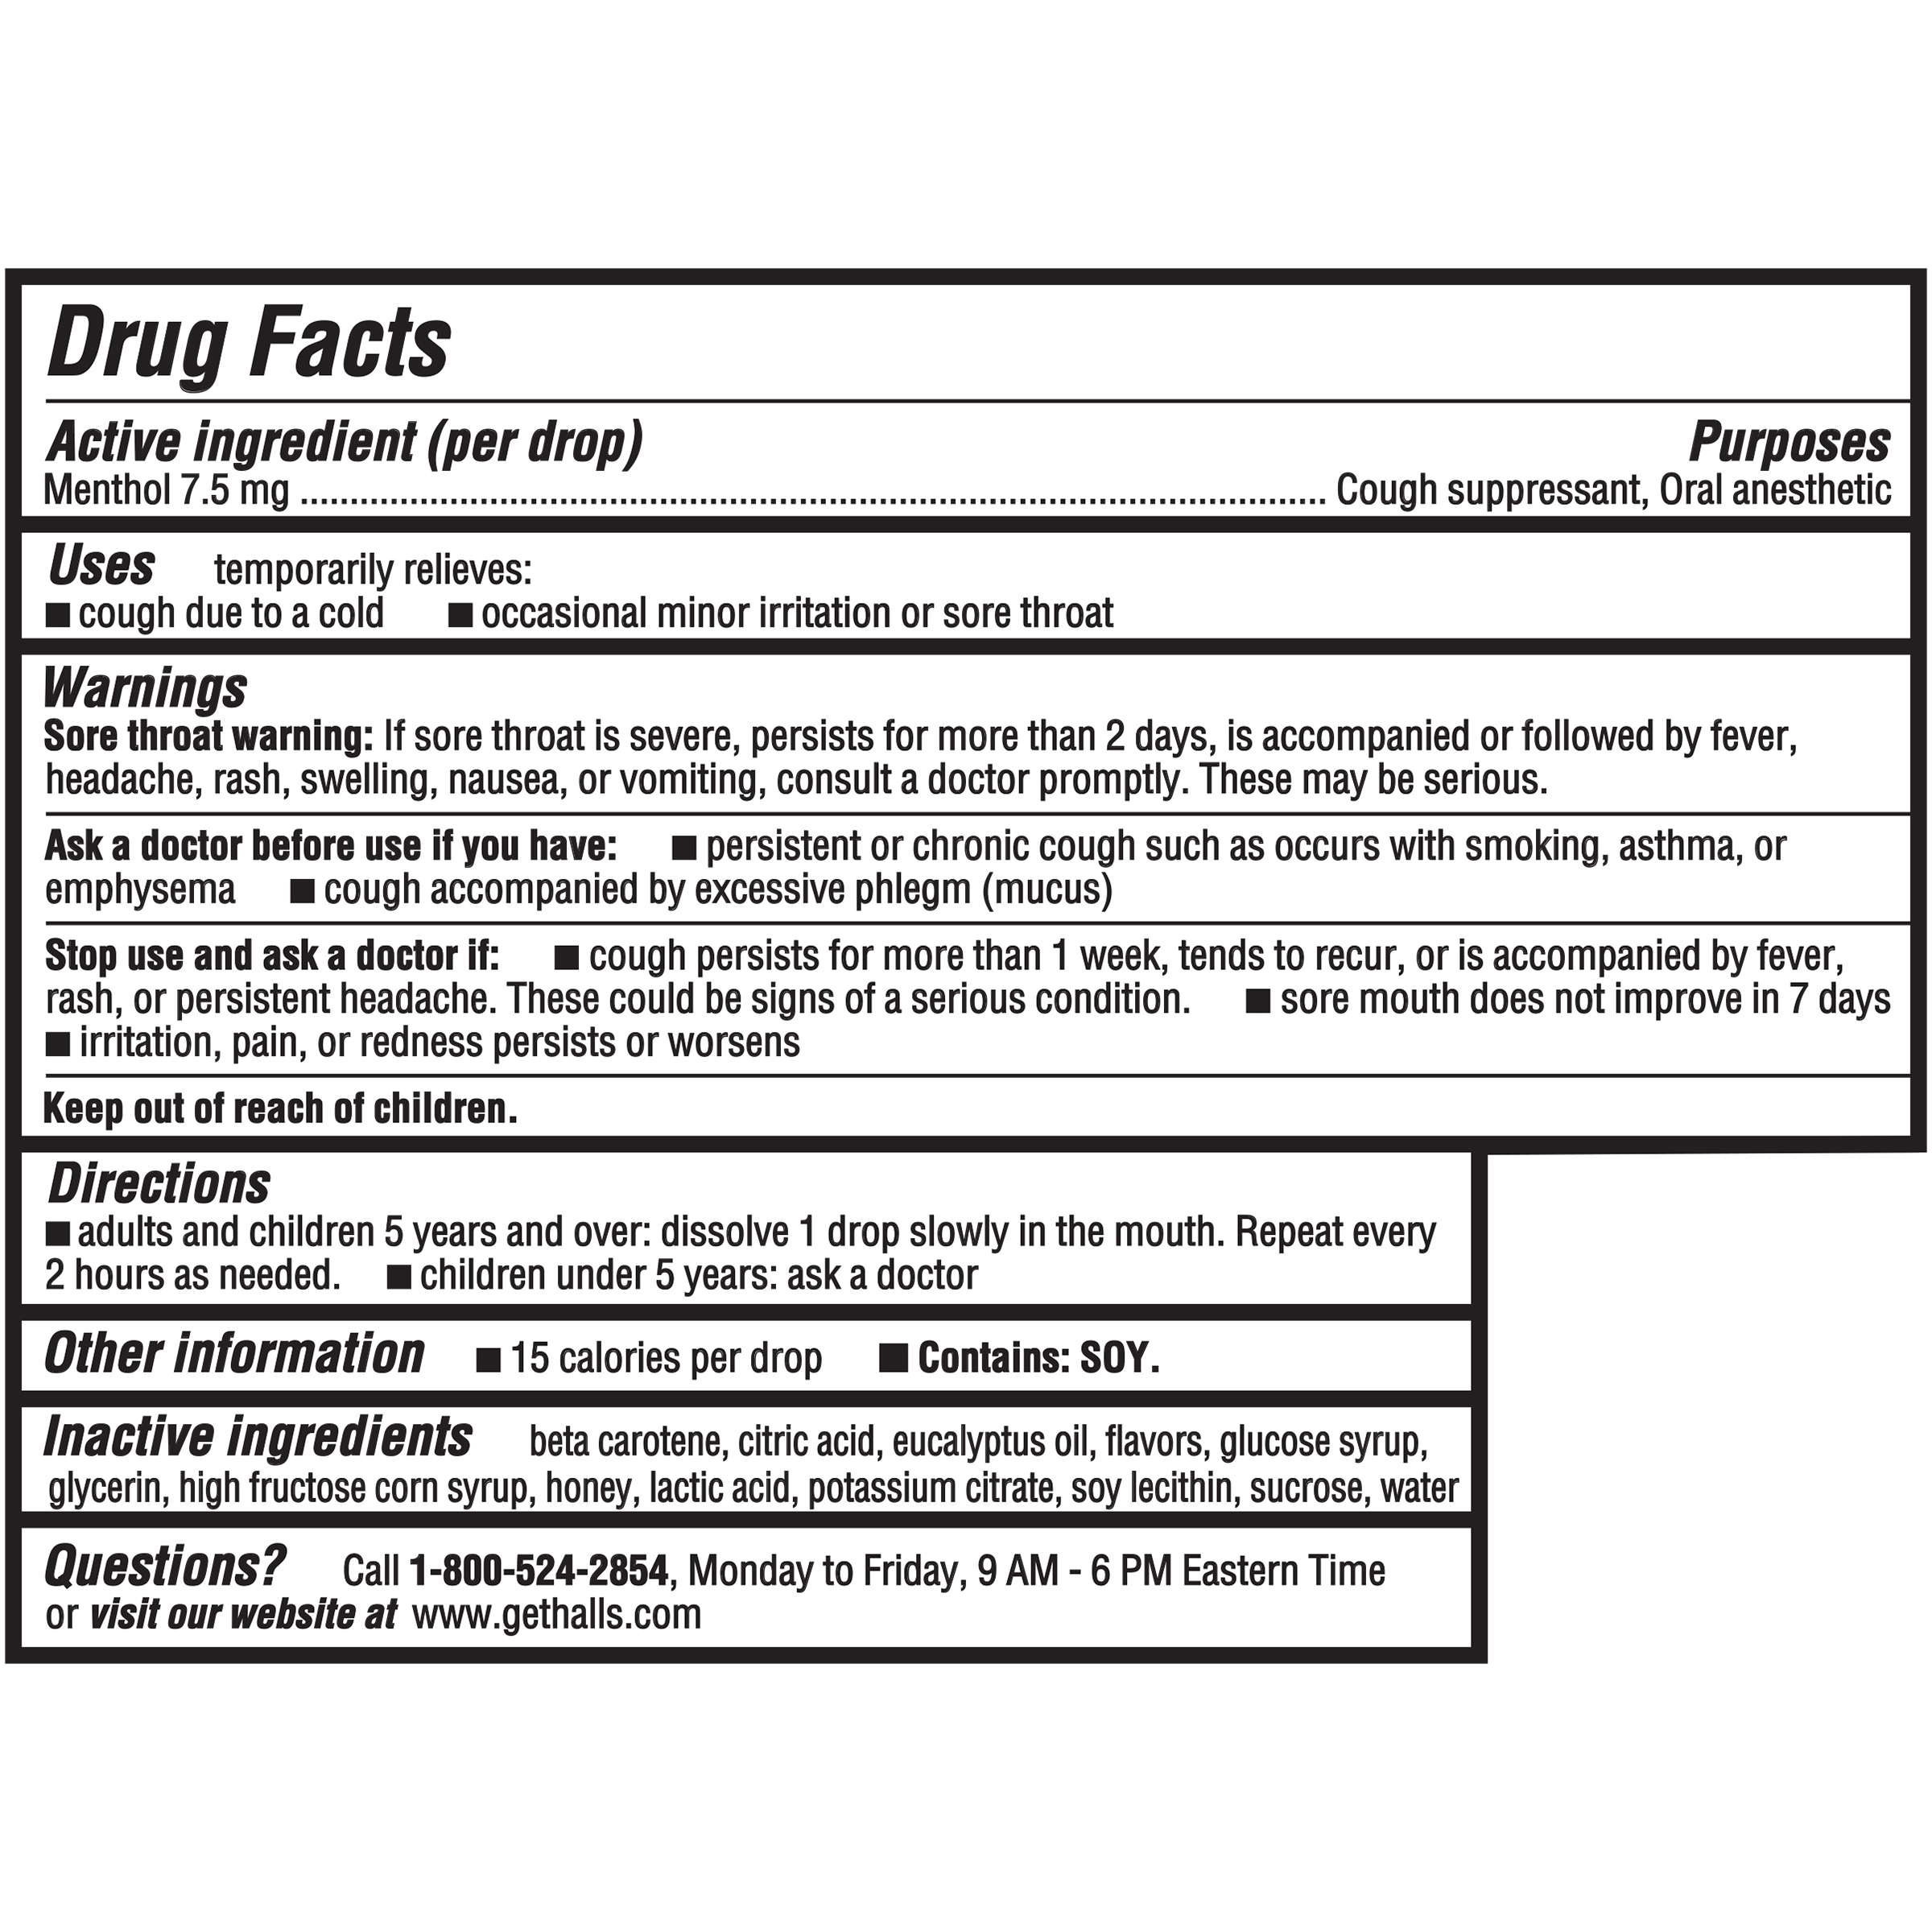 Drug_Facts_Image_url Image